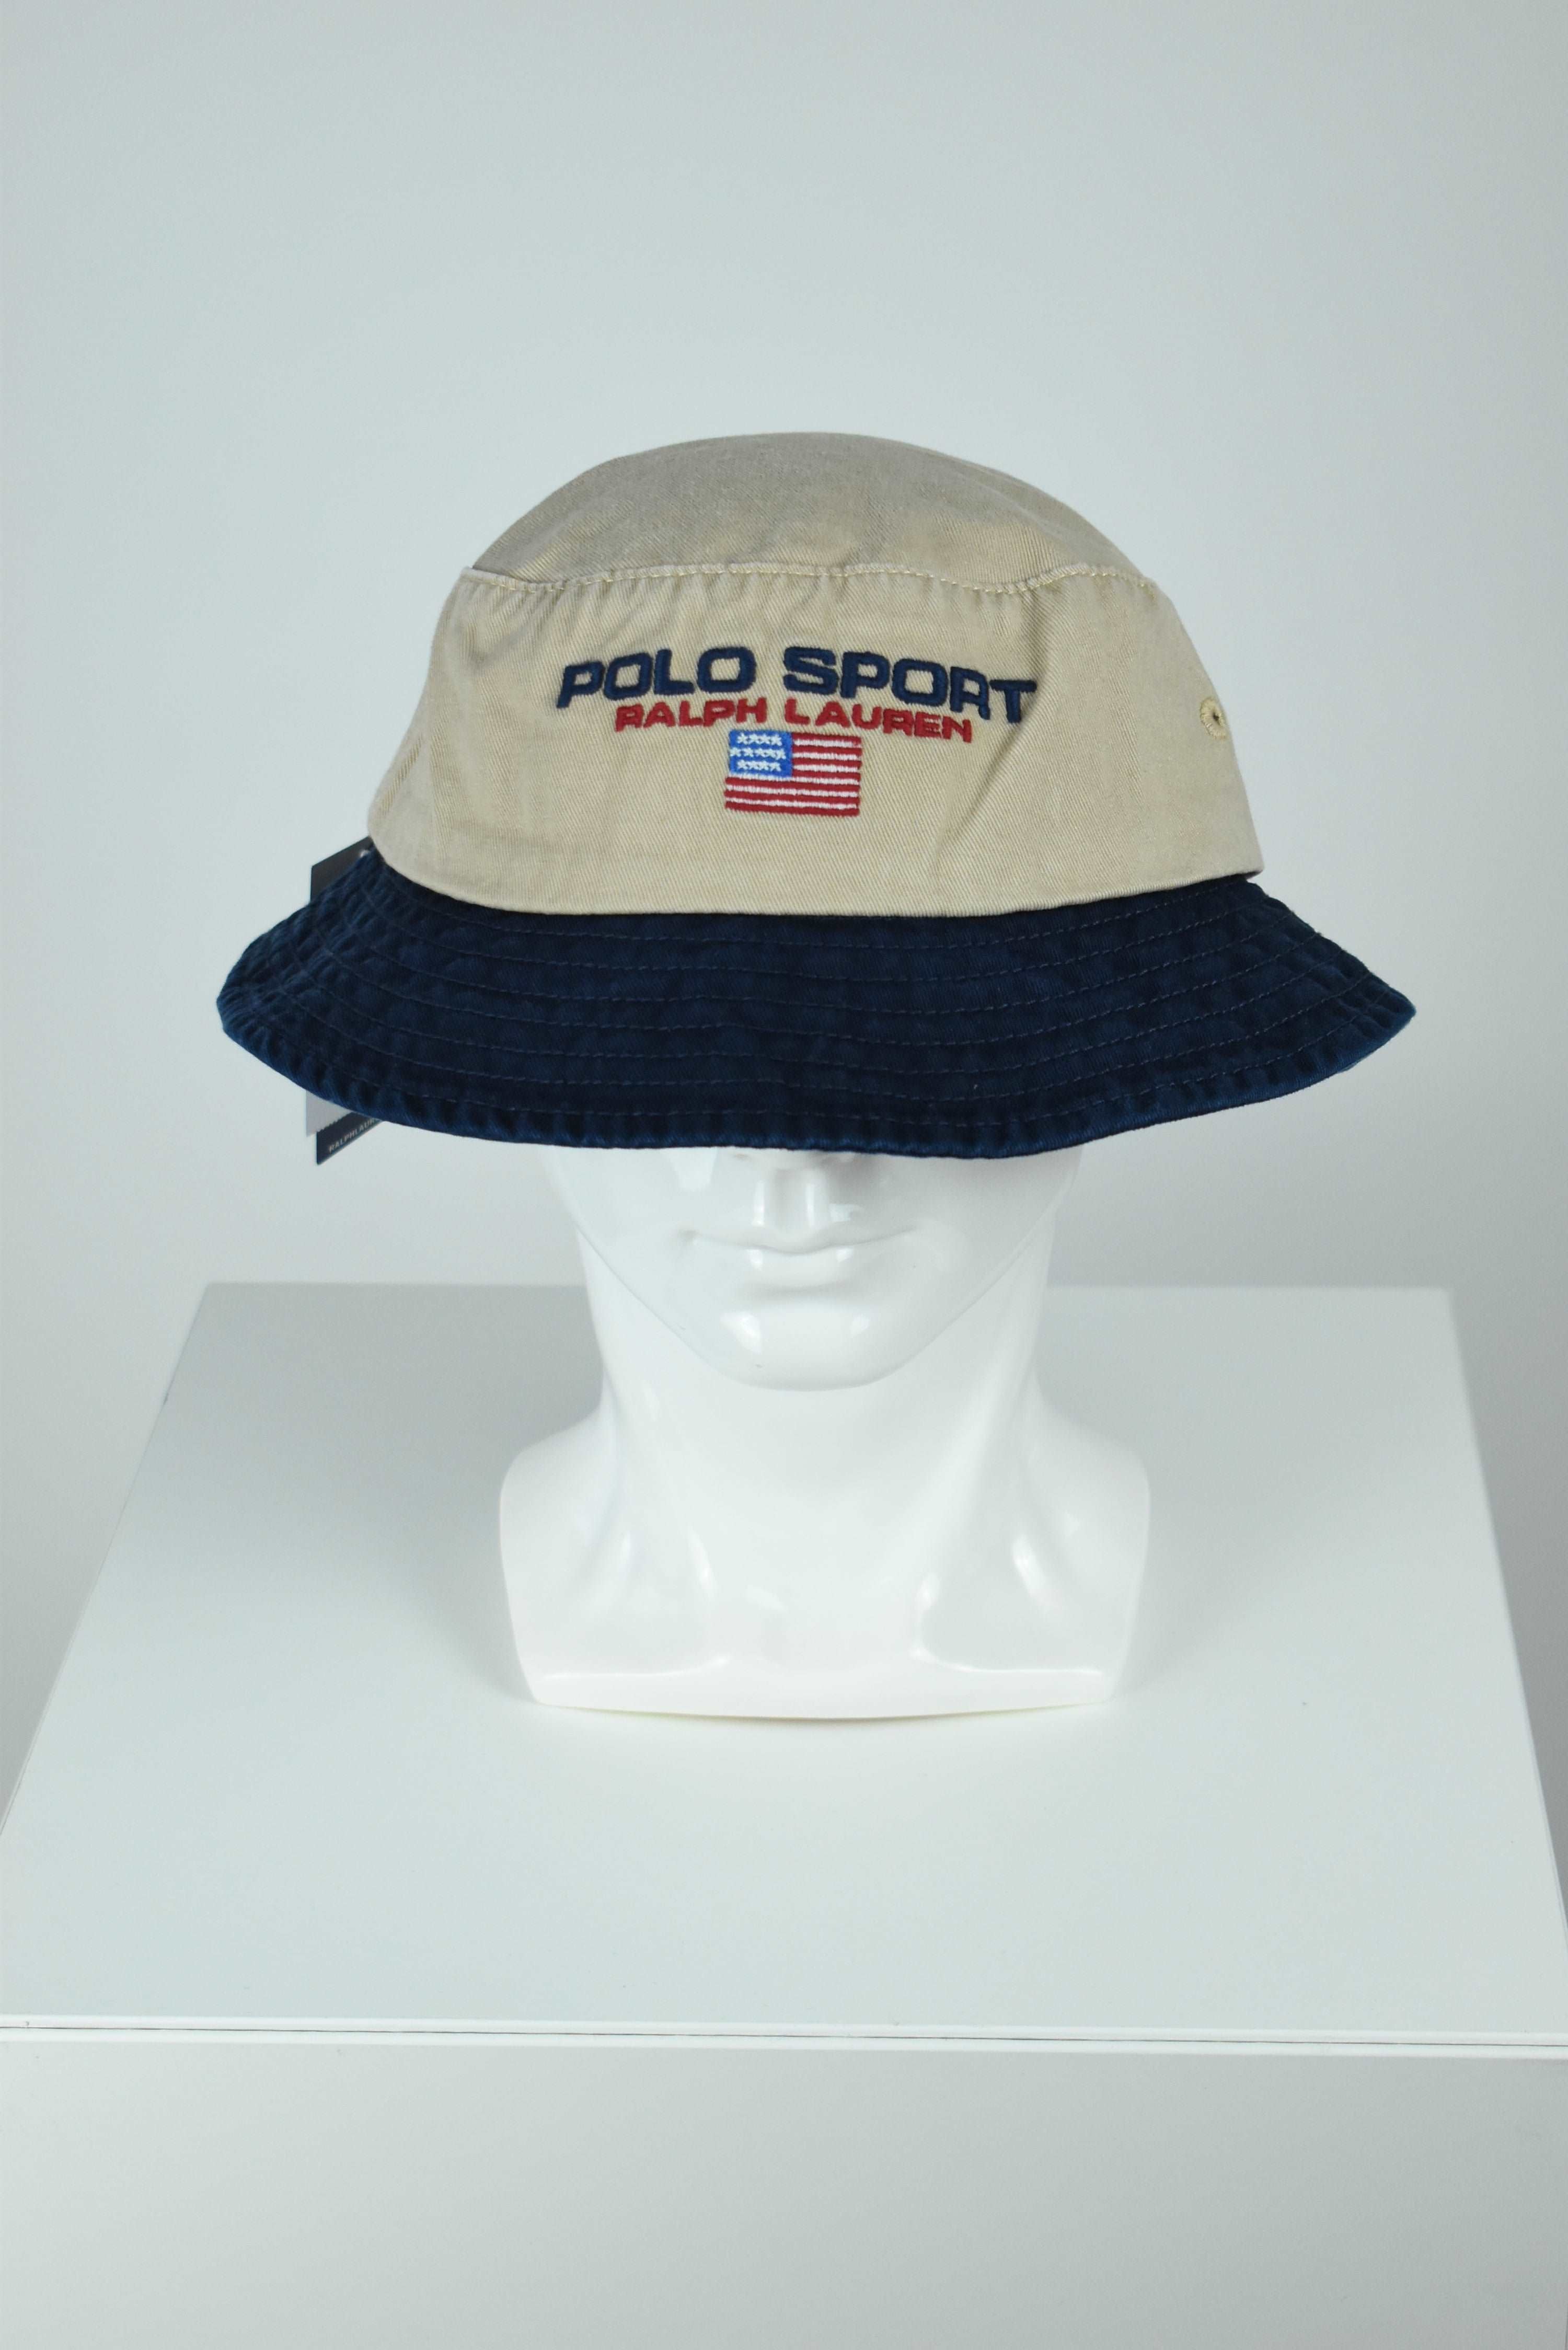 New Ralph Lauren Polo Sport Bucket Hat Beige/Navy OS